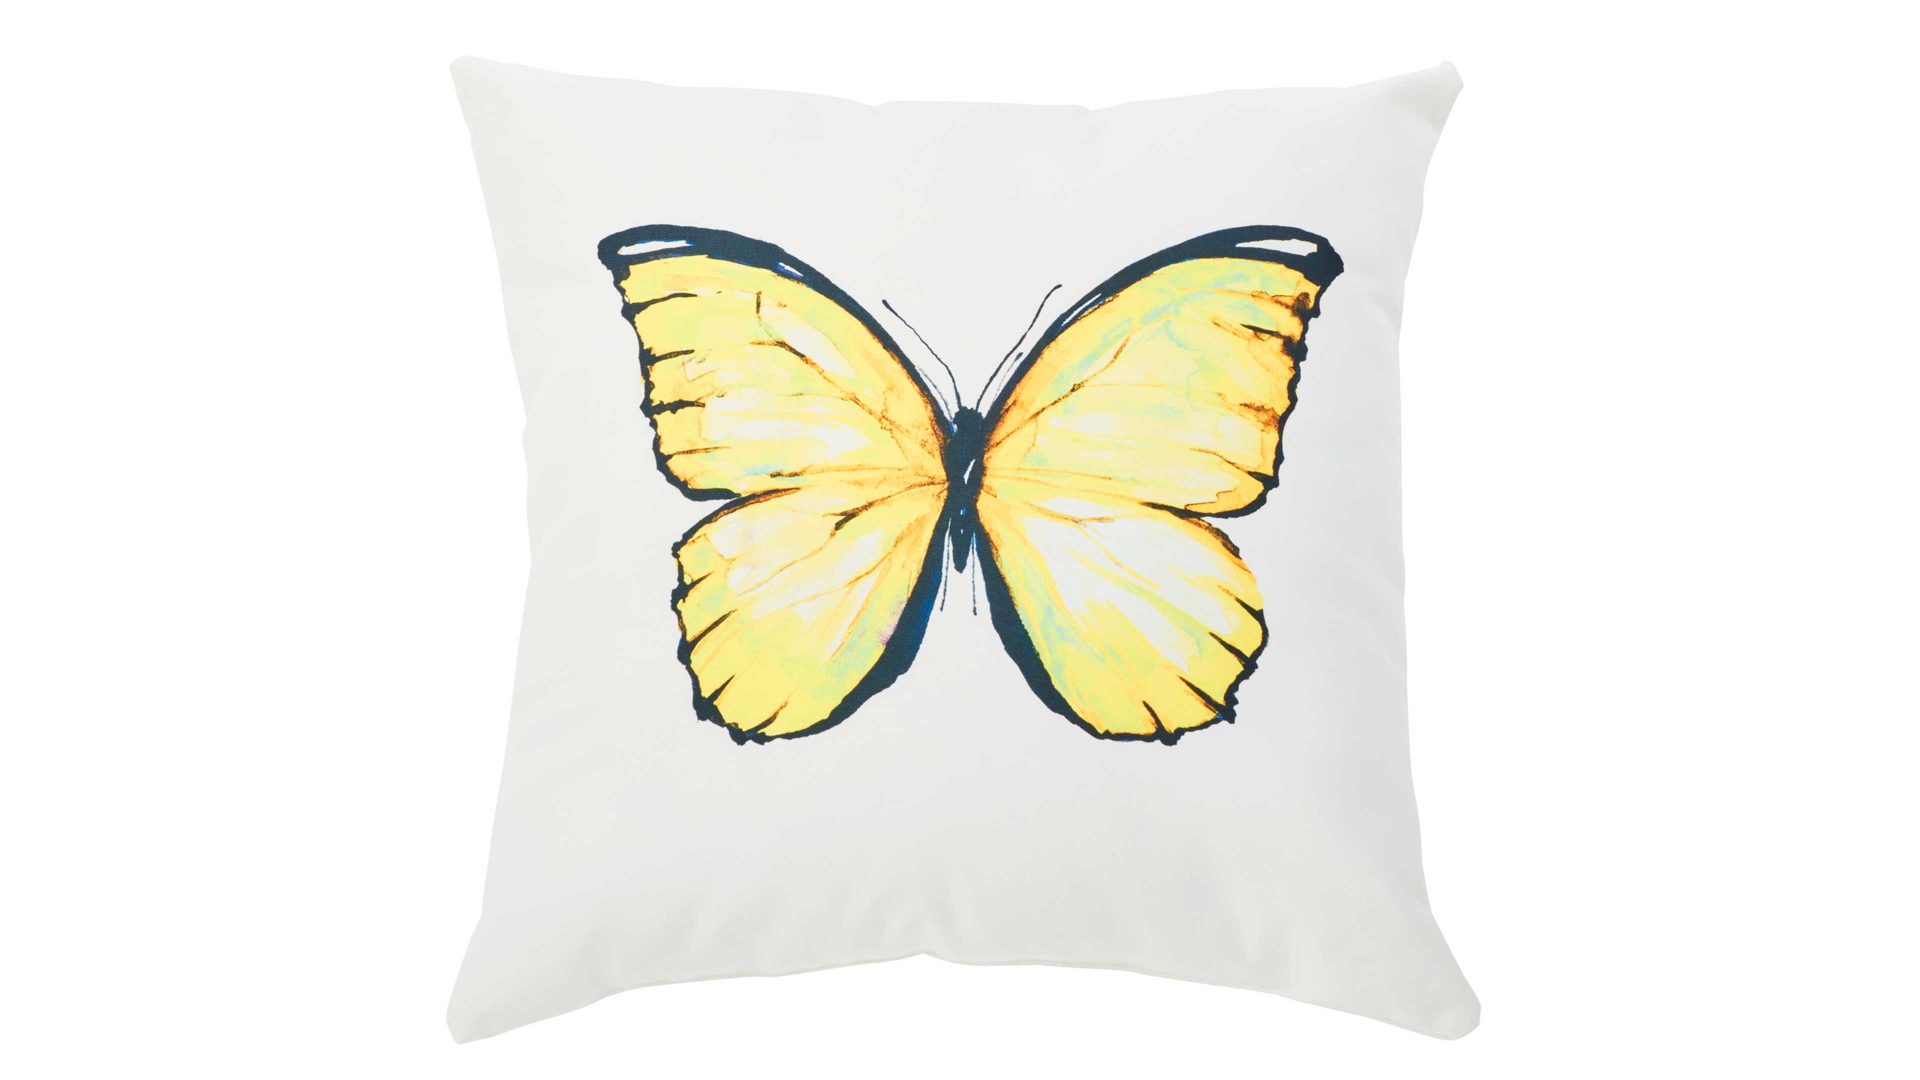 Einzelkissen Interliving BEST BUDDYS! aus Kunstfaser in Gelb Interliving BEST BUDDYS! Kissen Cushion Outside Butterfly Dessin Schmetterling– ca. 65 x 65 cm